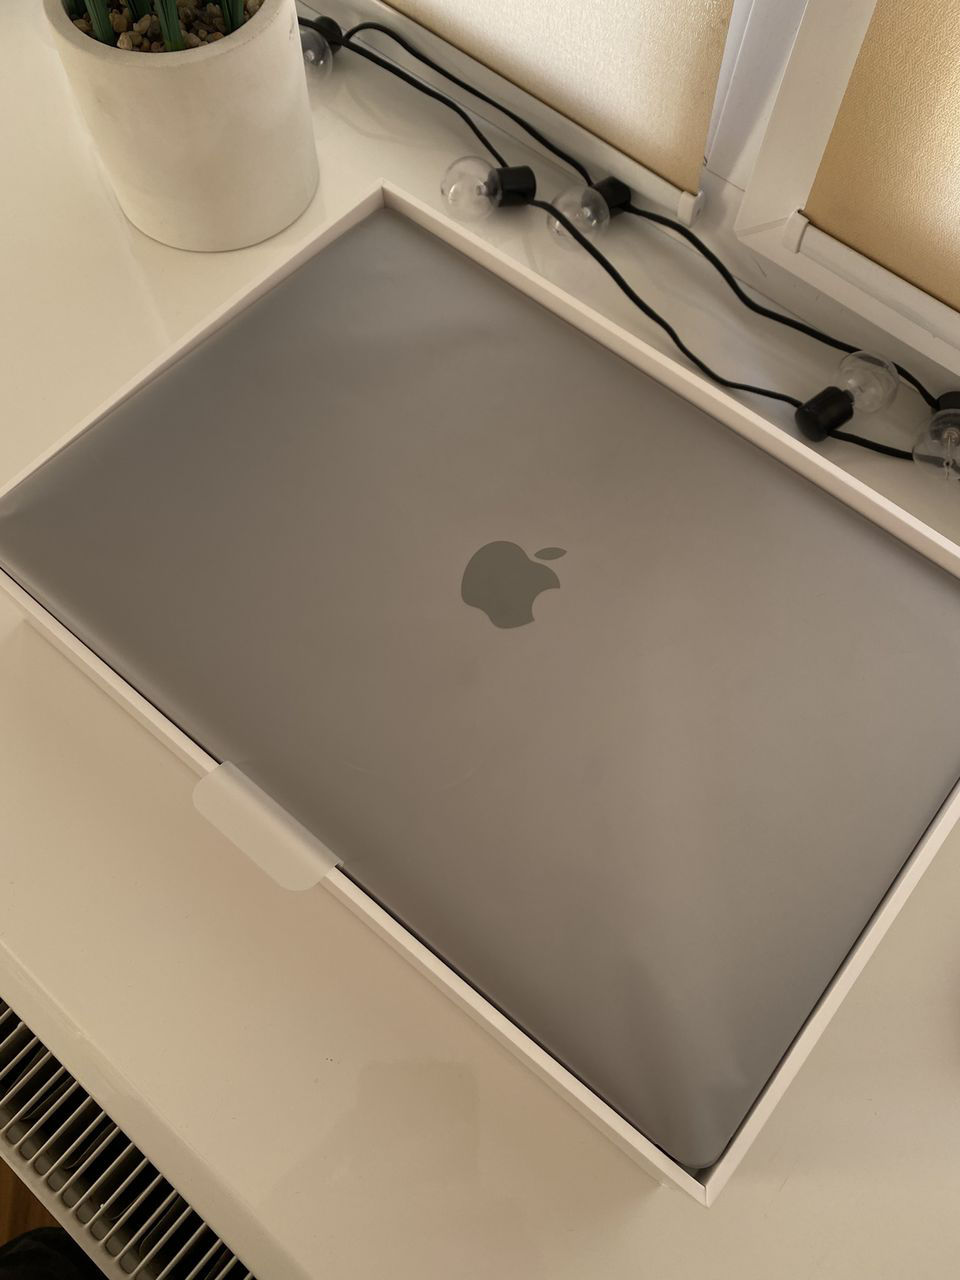 Apple macbook air m1 hub p touch e550w